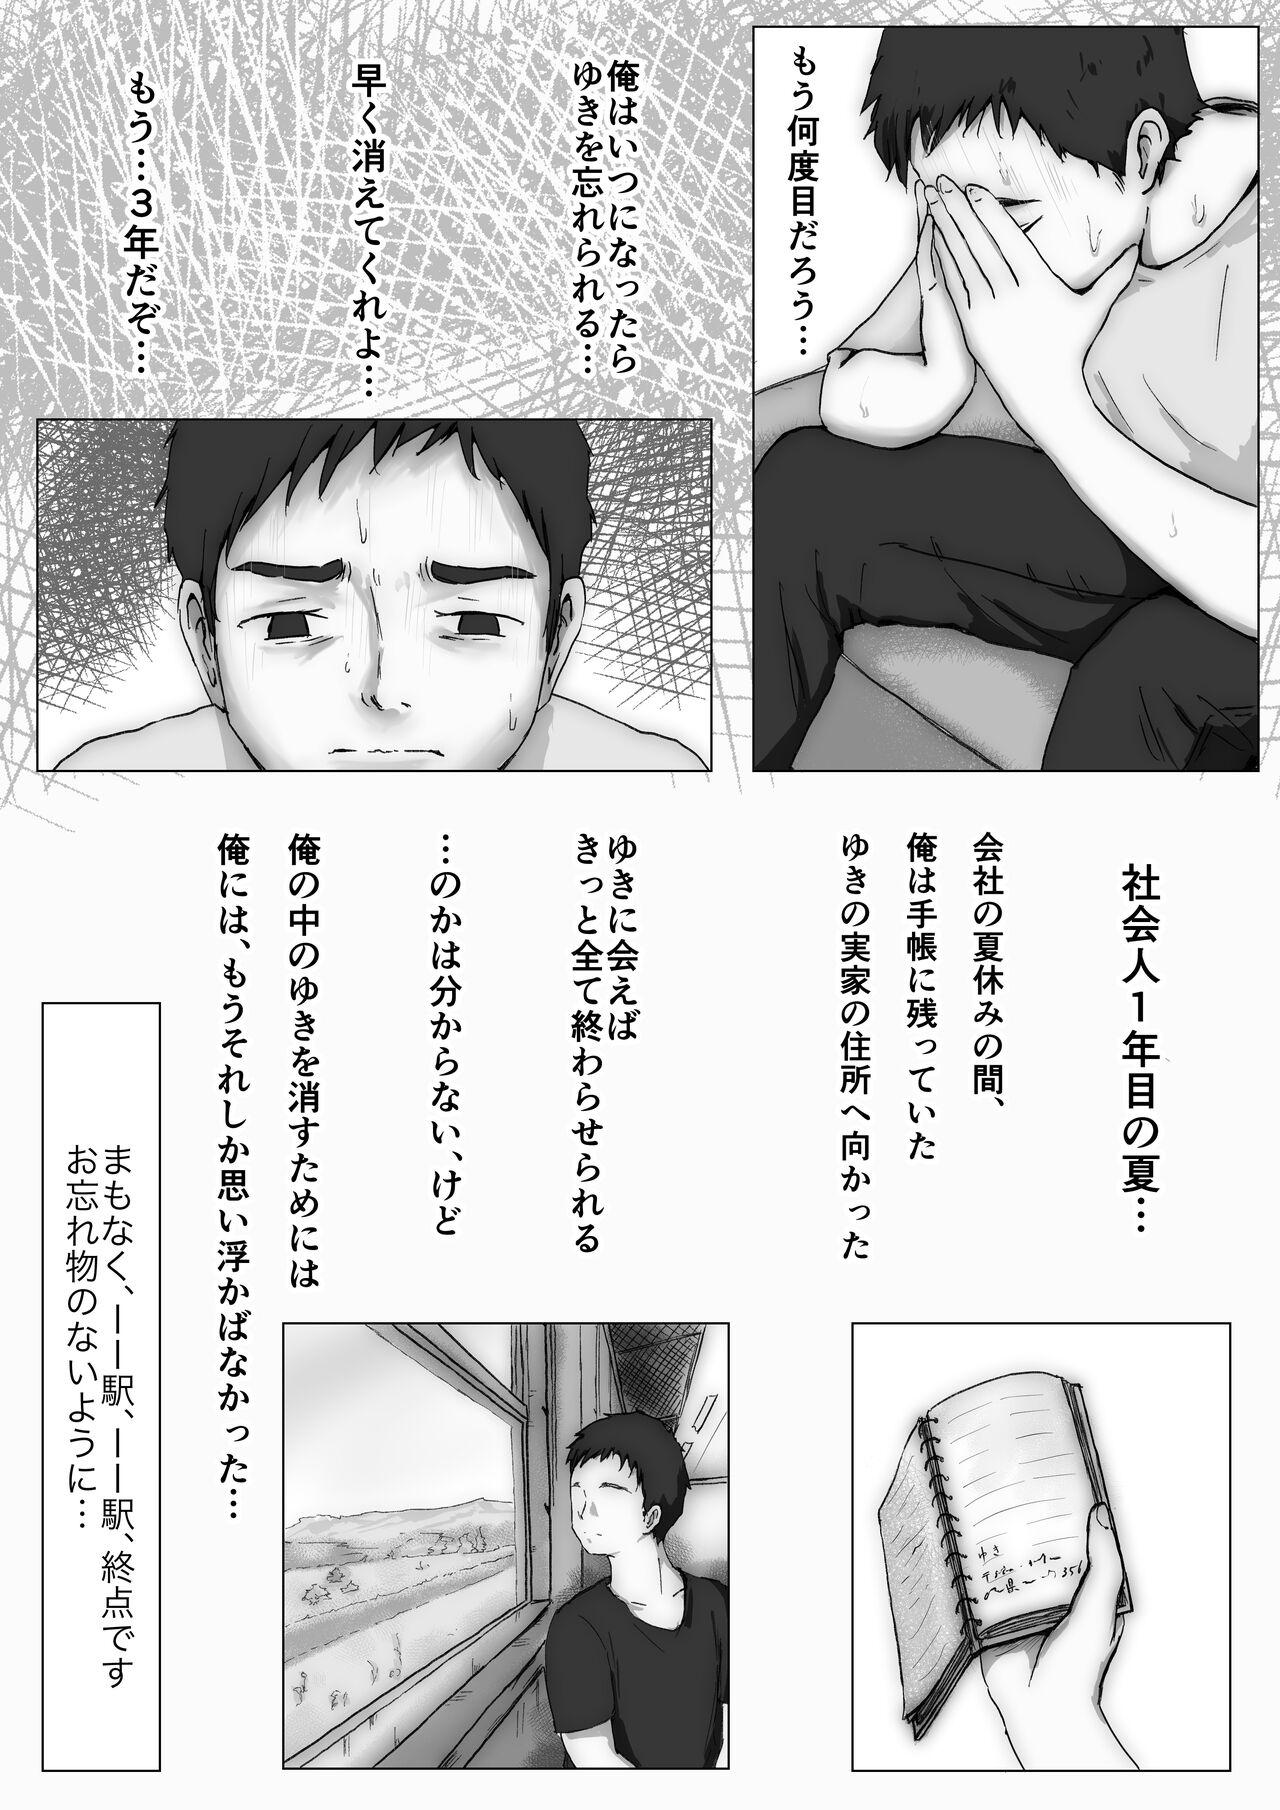 Fetish Honto no Kanojo 3 - Original Solo Female - Page 9